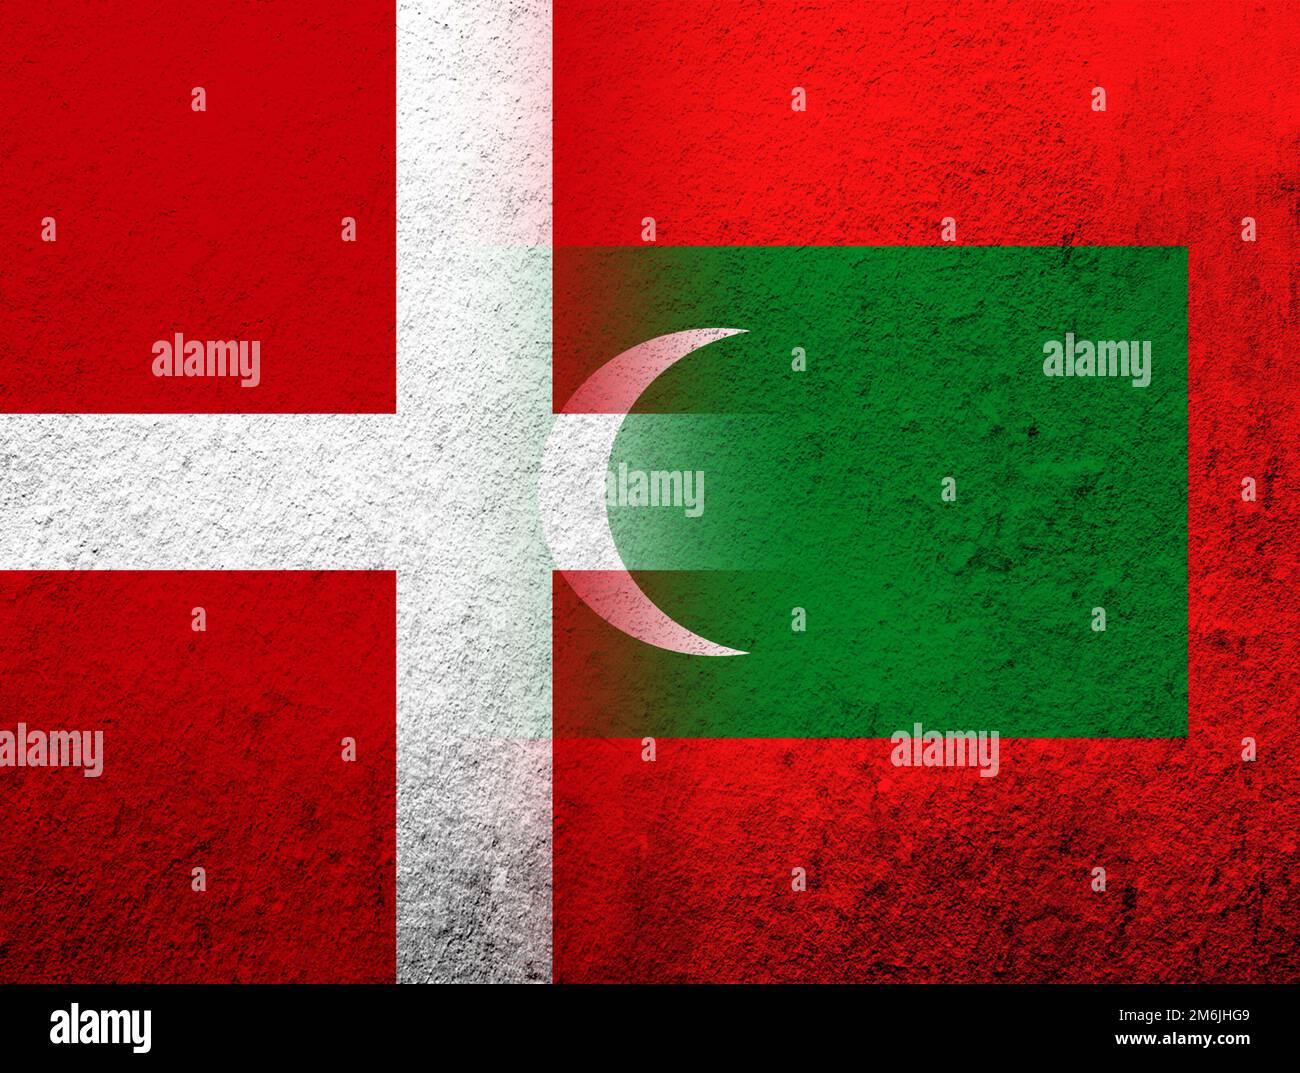 Le Royaume de Danemark drapeau national avec la République des Maldives drapeau national. Grunge l'arrière-plan Banque D'Images